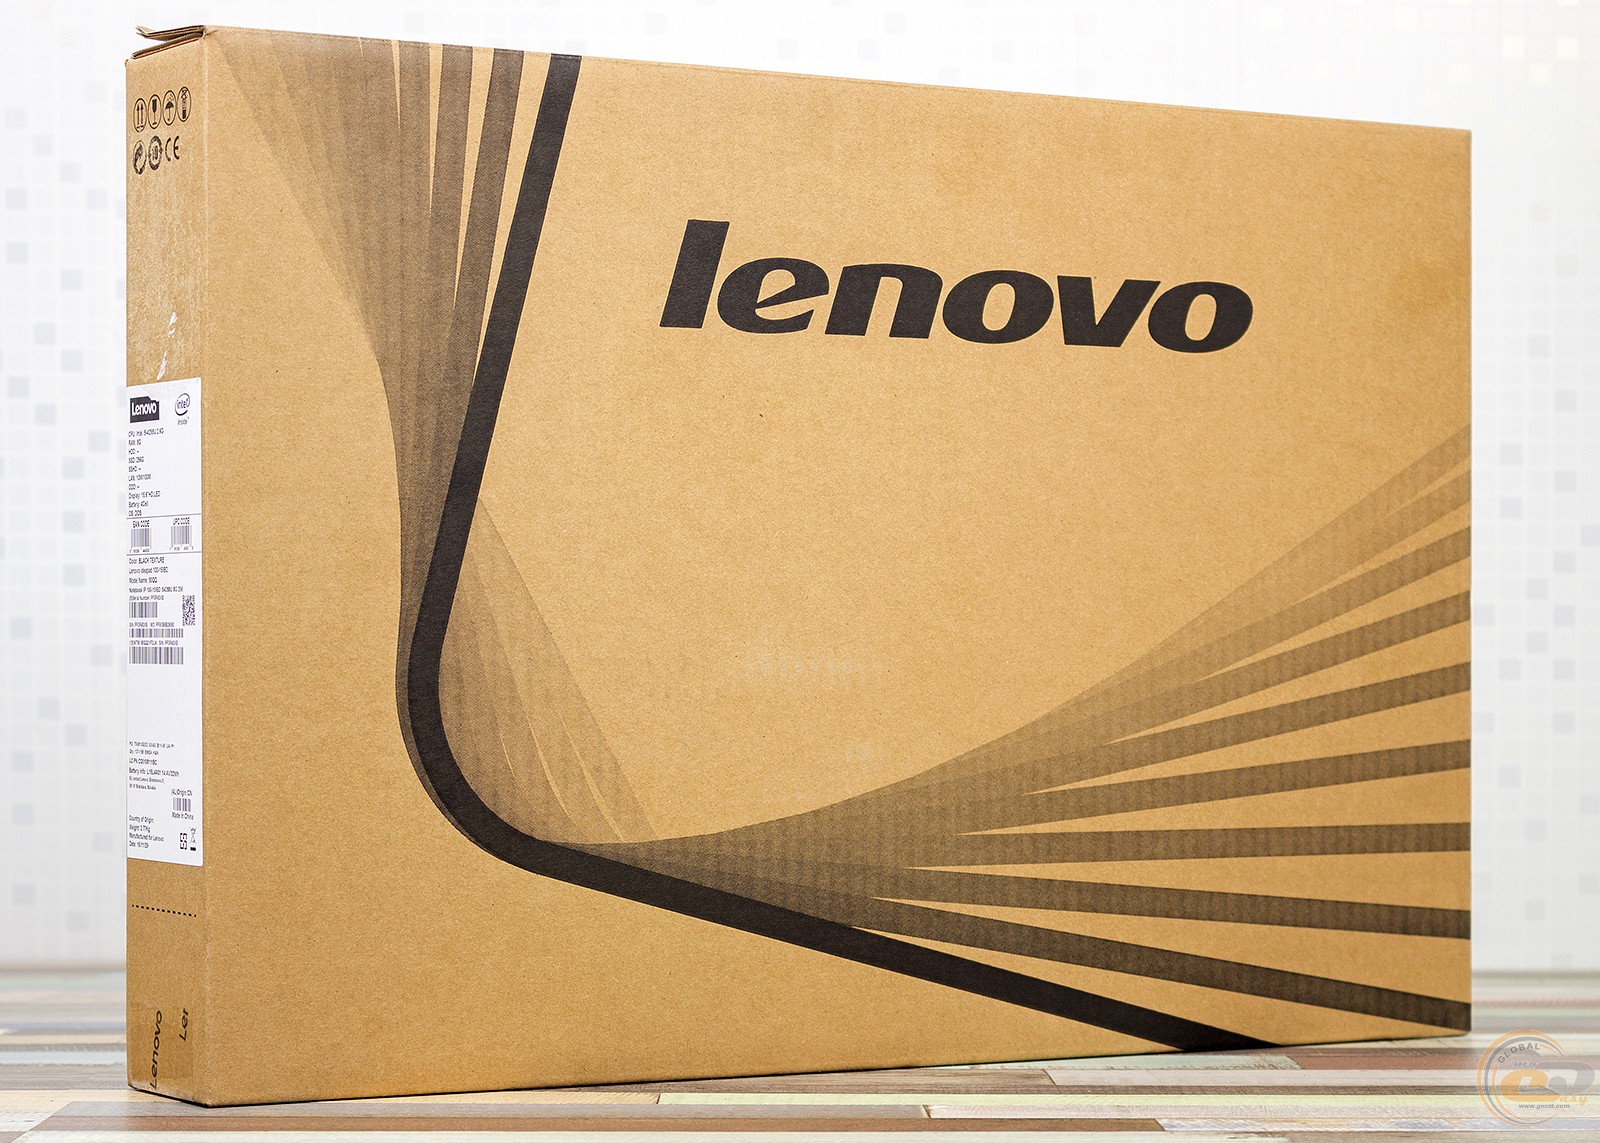 Купить Ноутбук Lenovo Ideapad 100-15iby